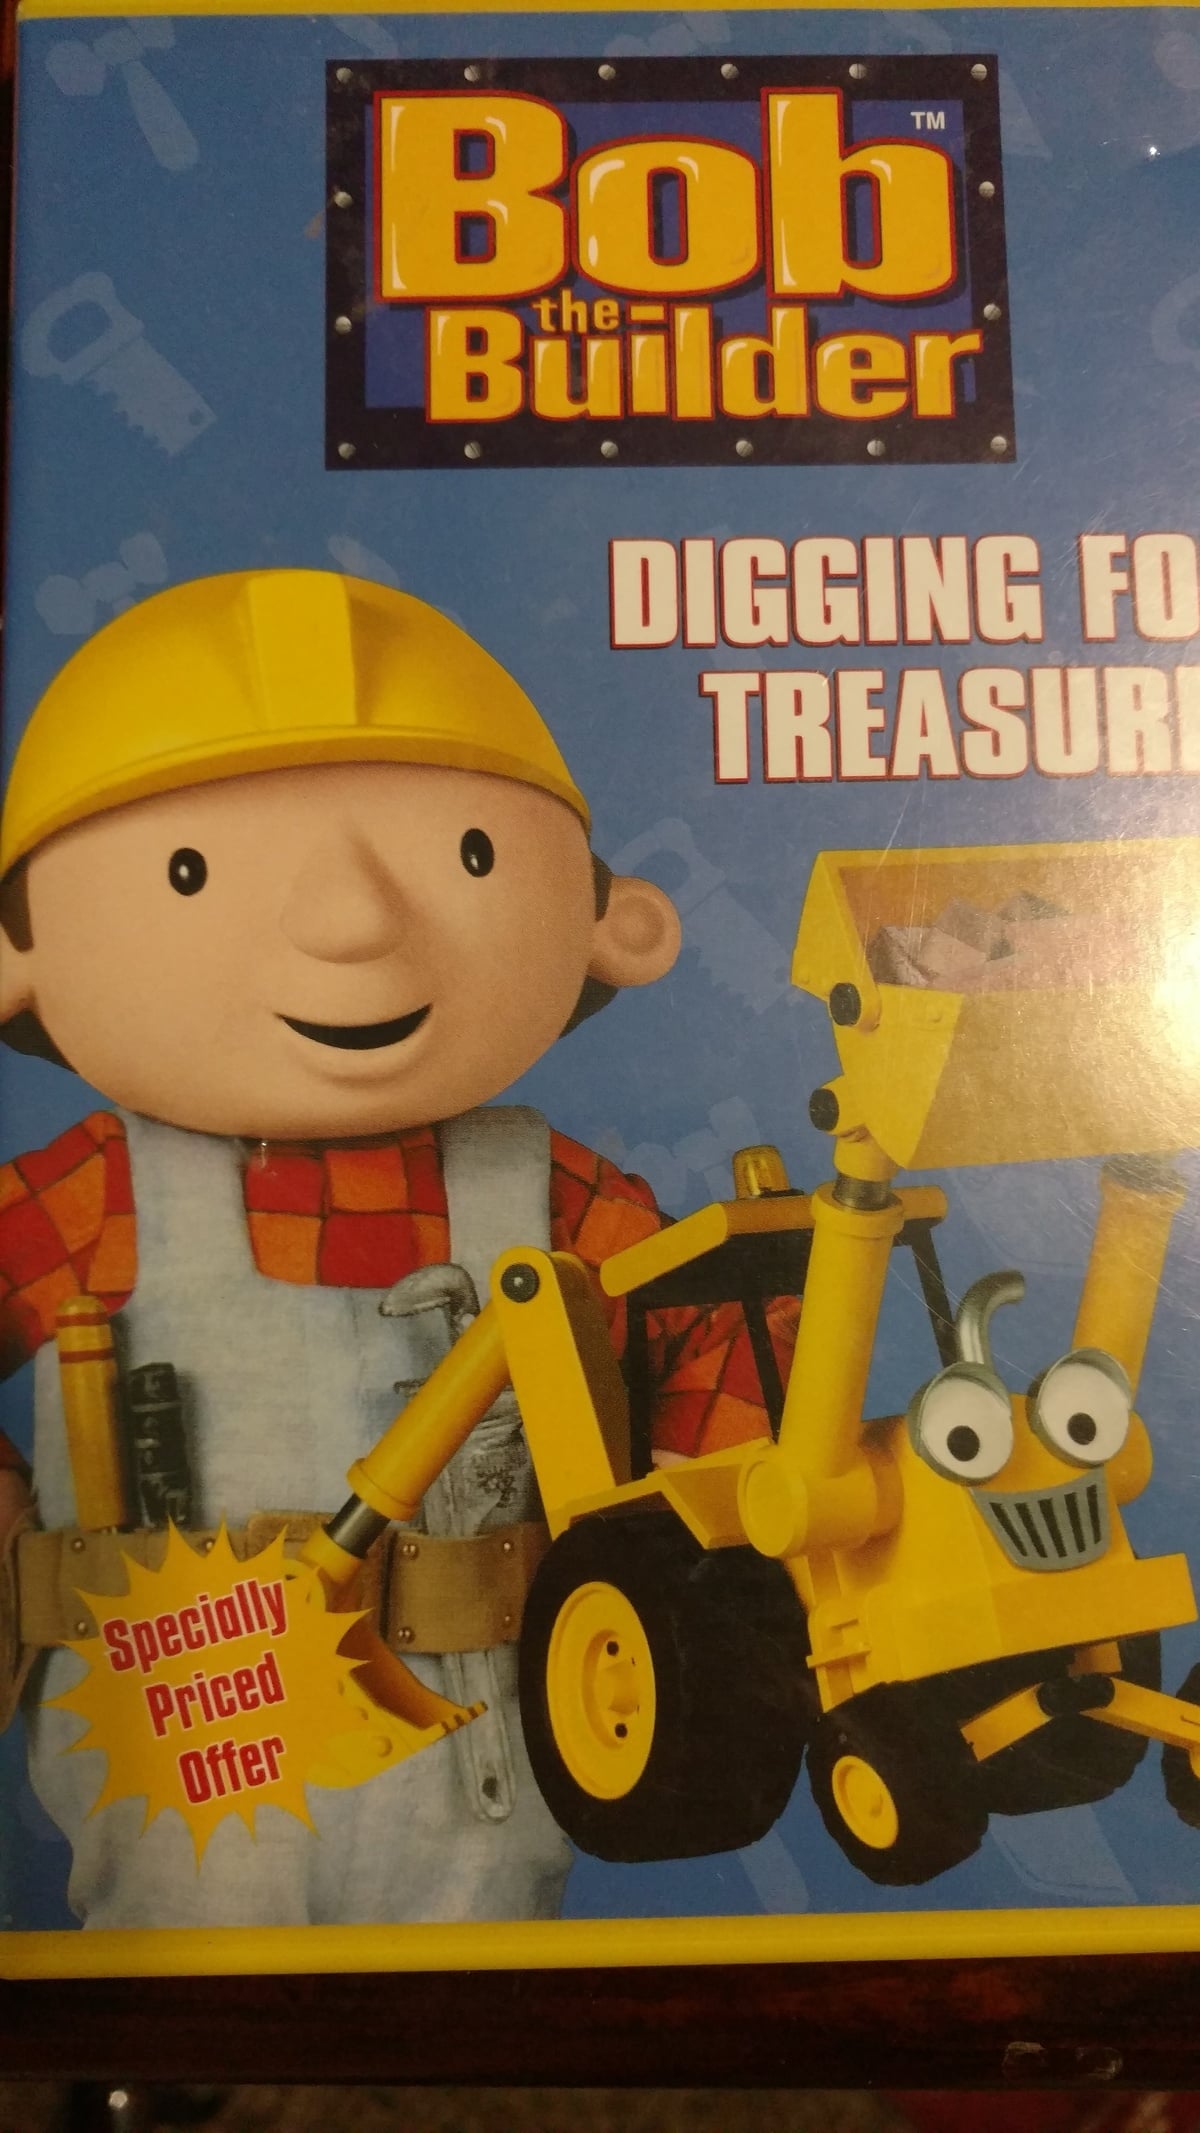 Bob the Builder: Digging for Treasure